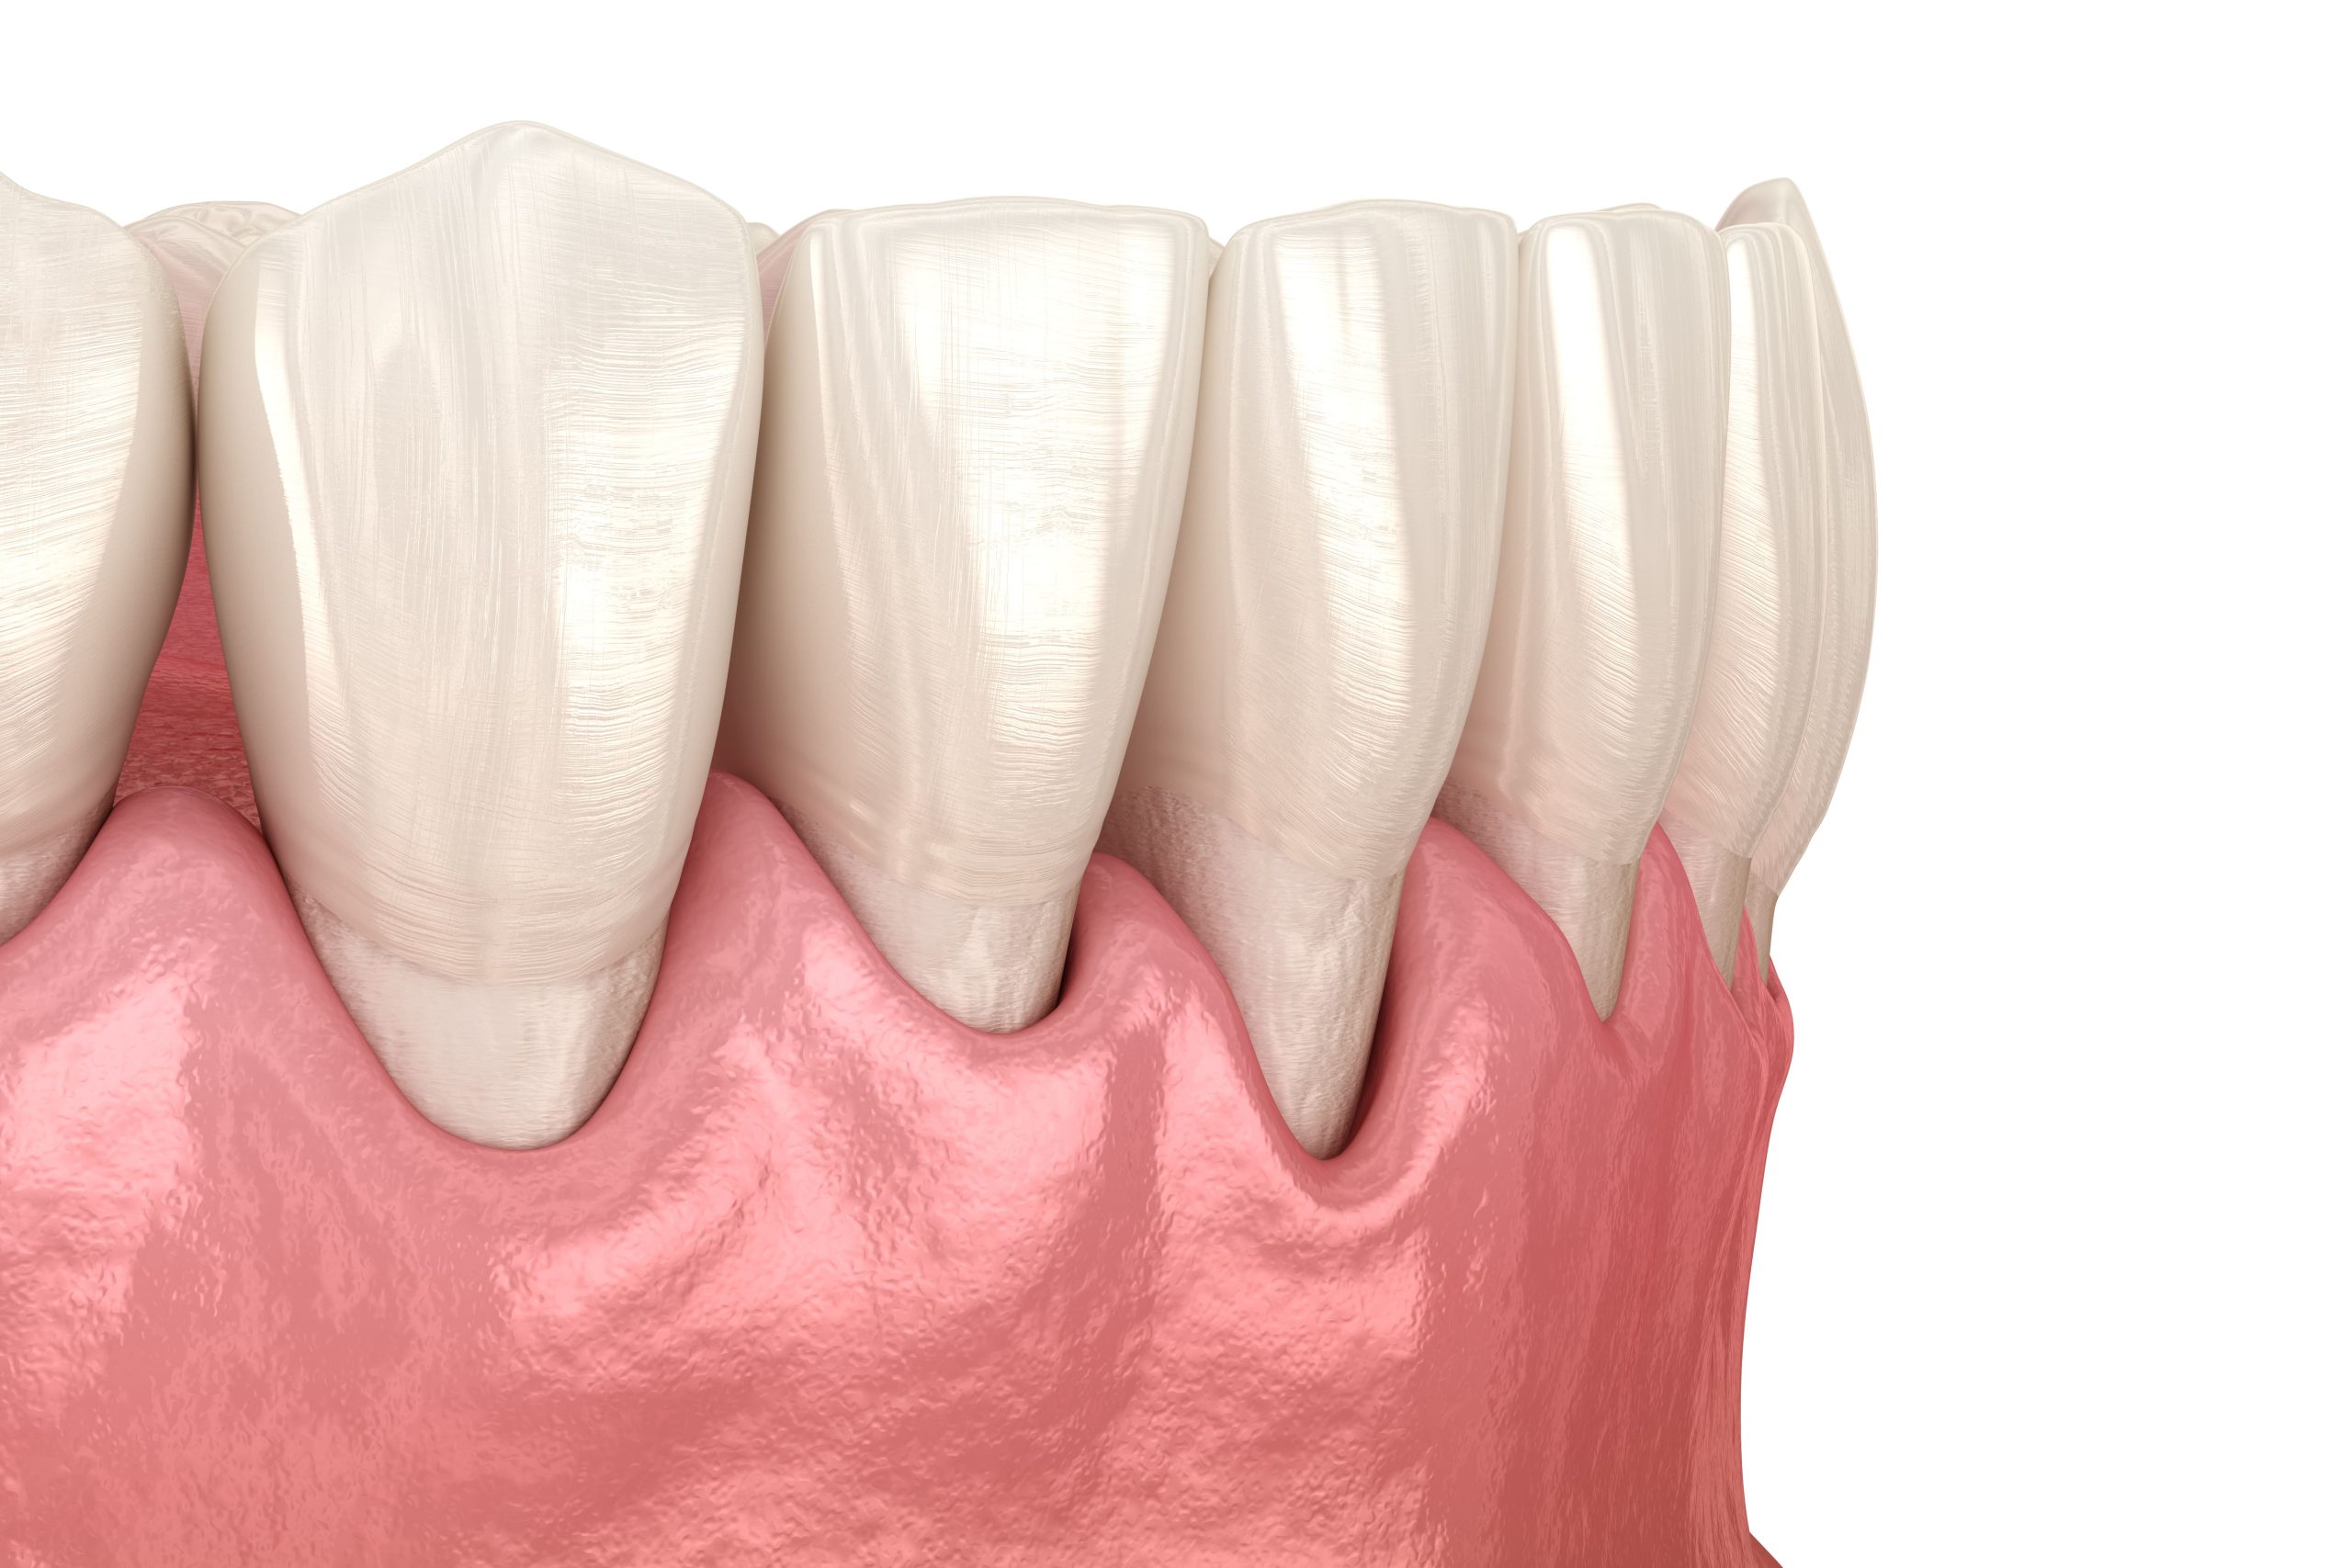 ¿Como fortalecer un diente que se mueve?